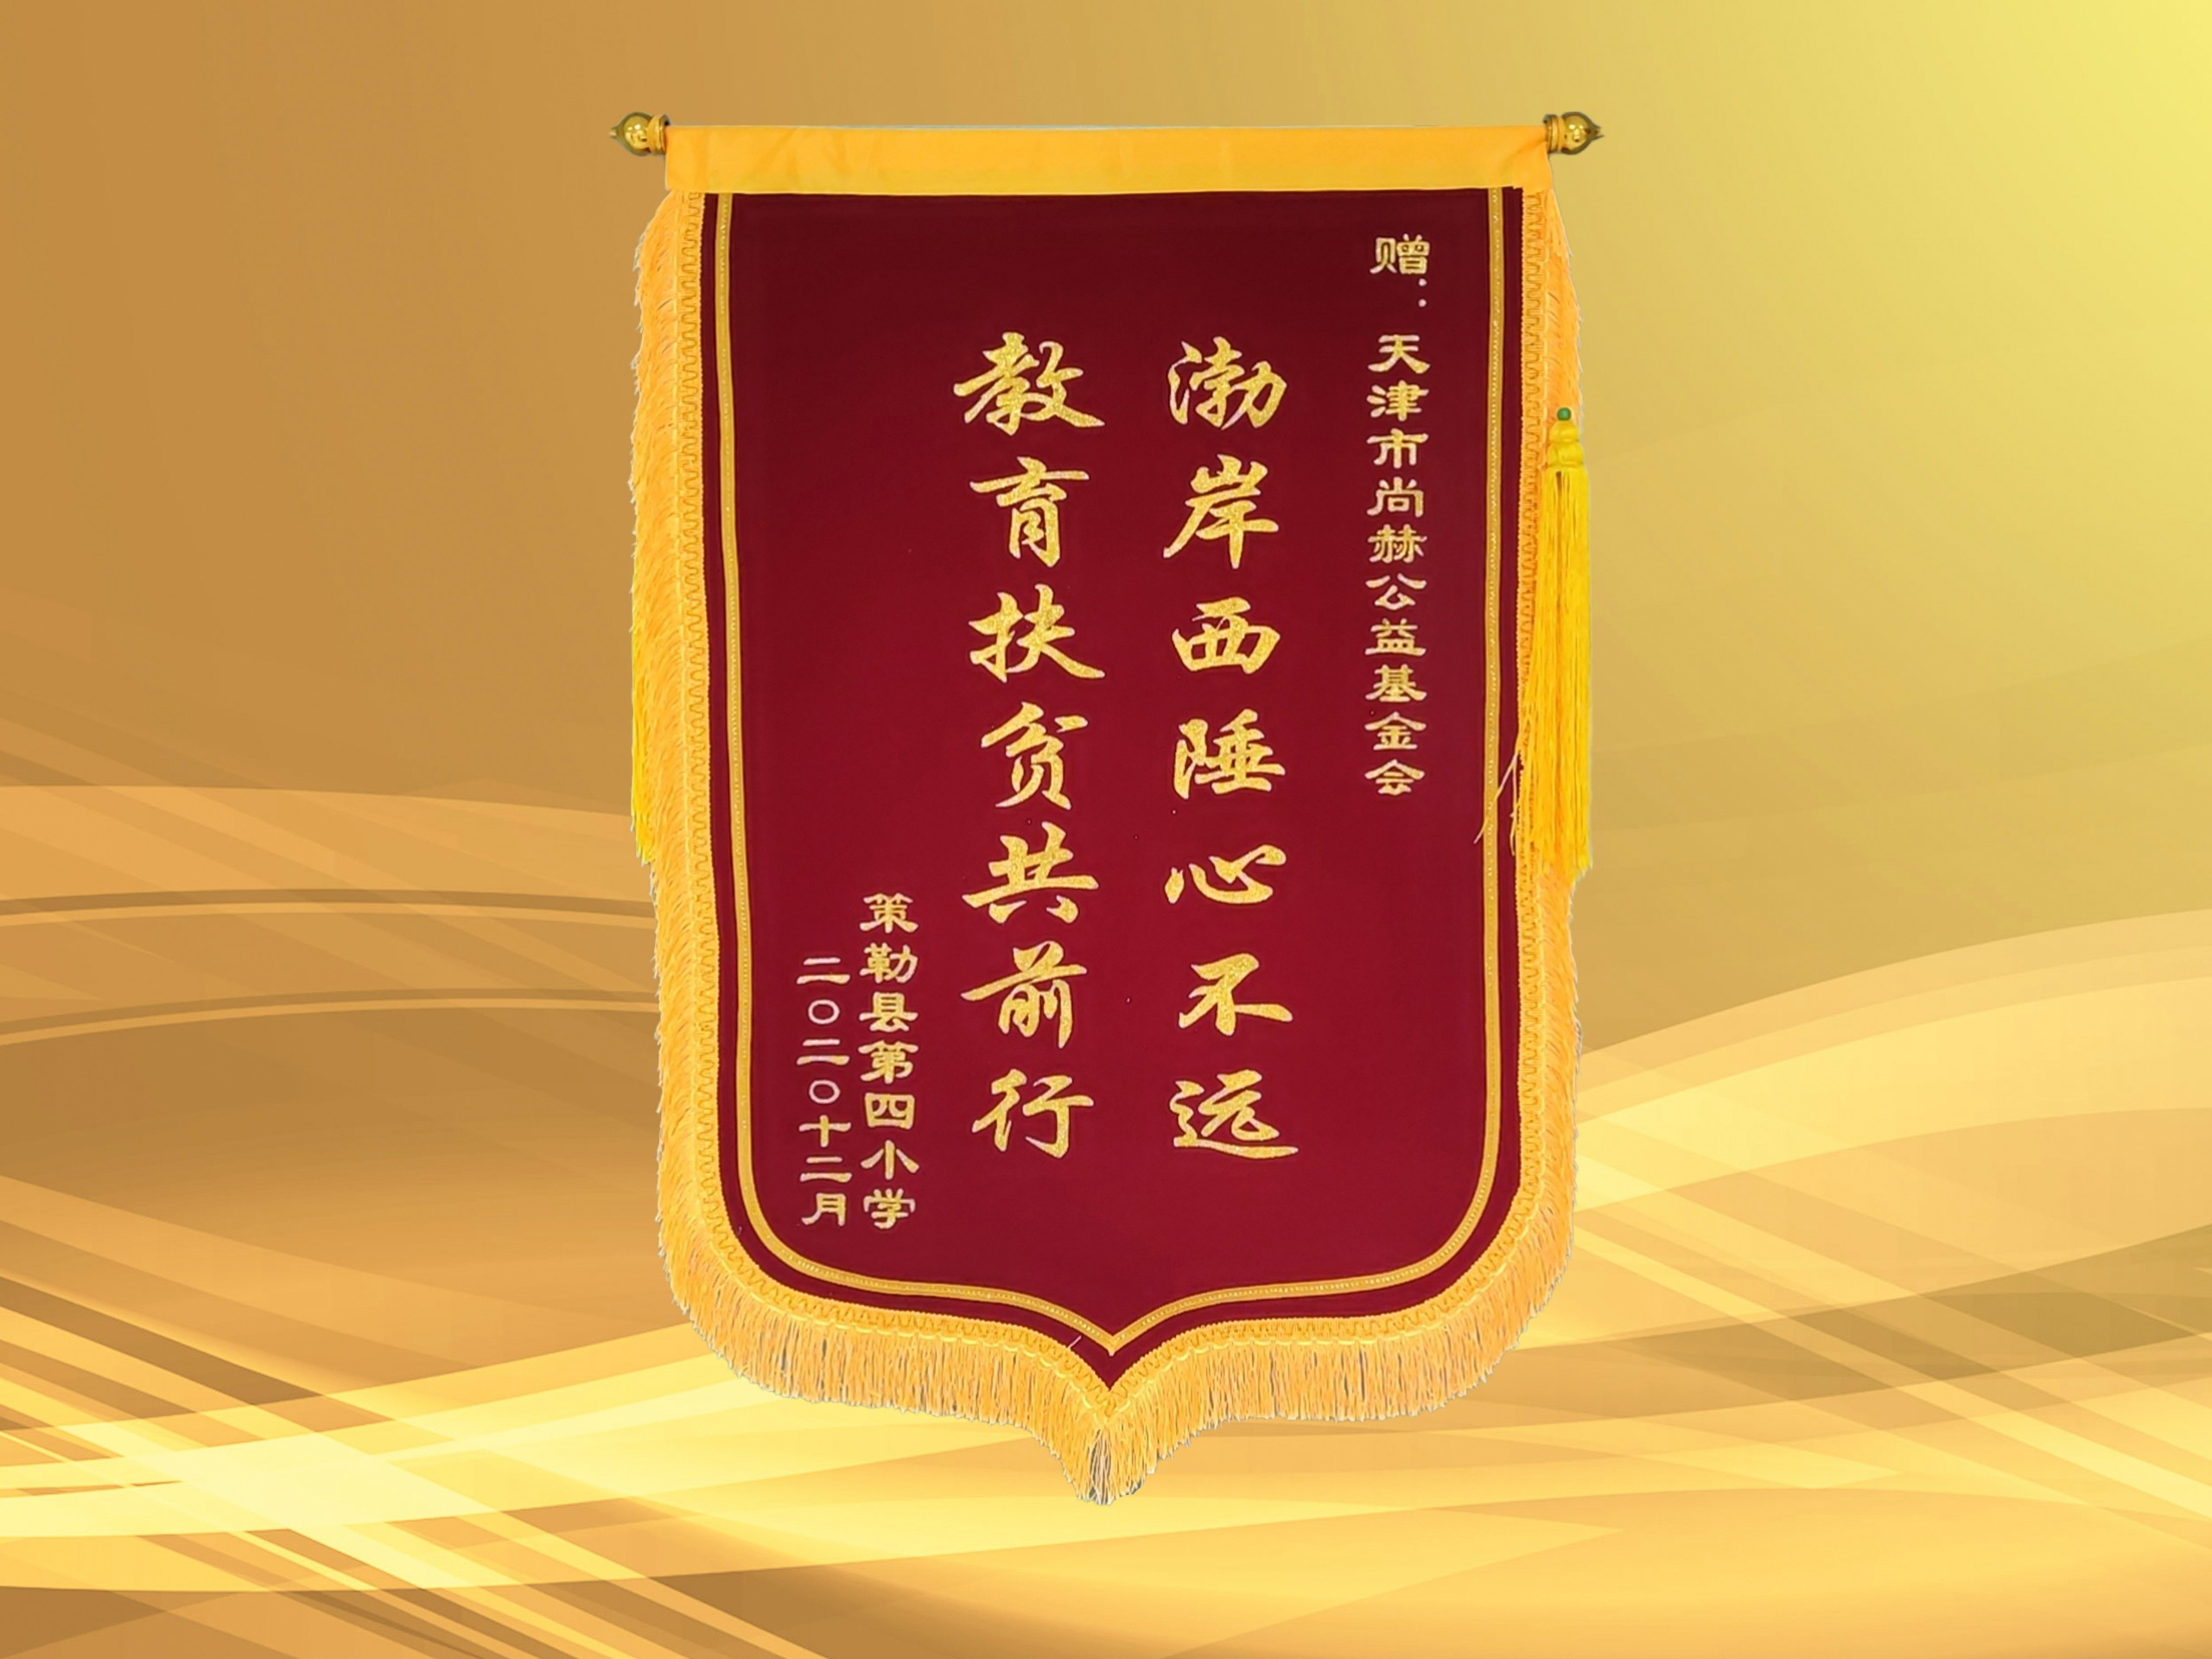 2021年3月-皇家体育(中国)有限责任公司公益基金会收到新疆策勒县第四小学赠予的锦旗